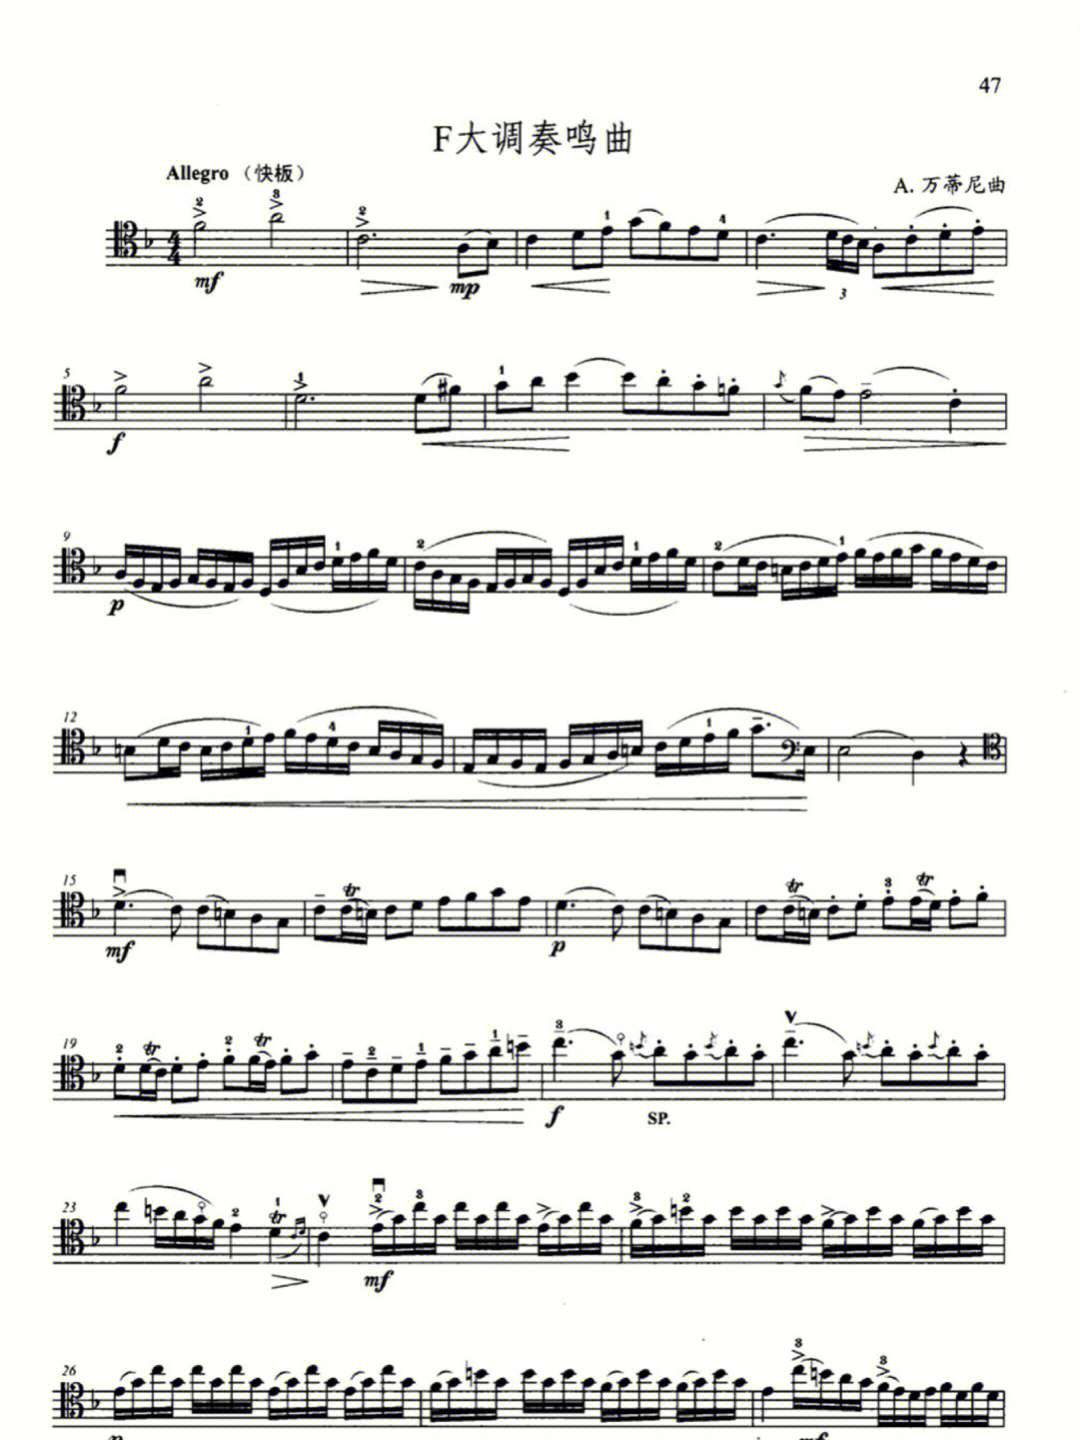 法国民歌大提琴五线谱图片